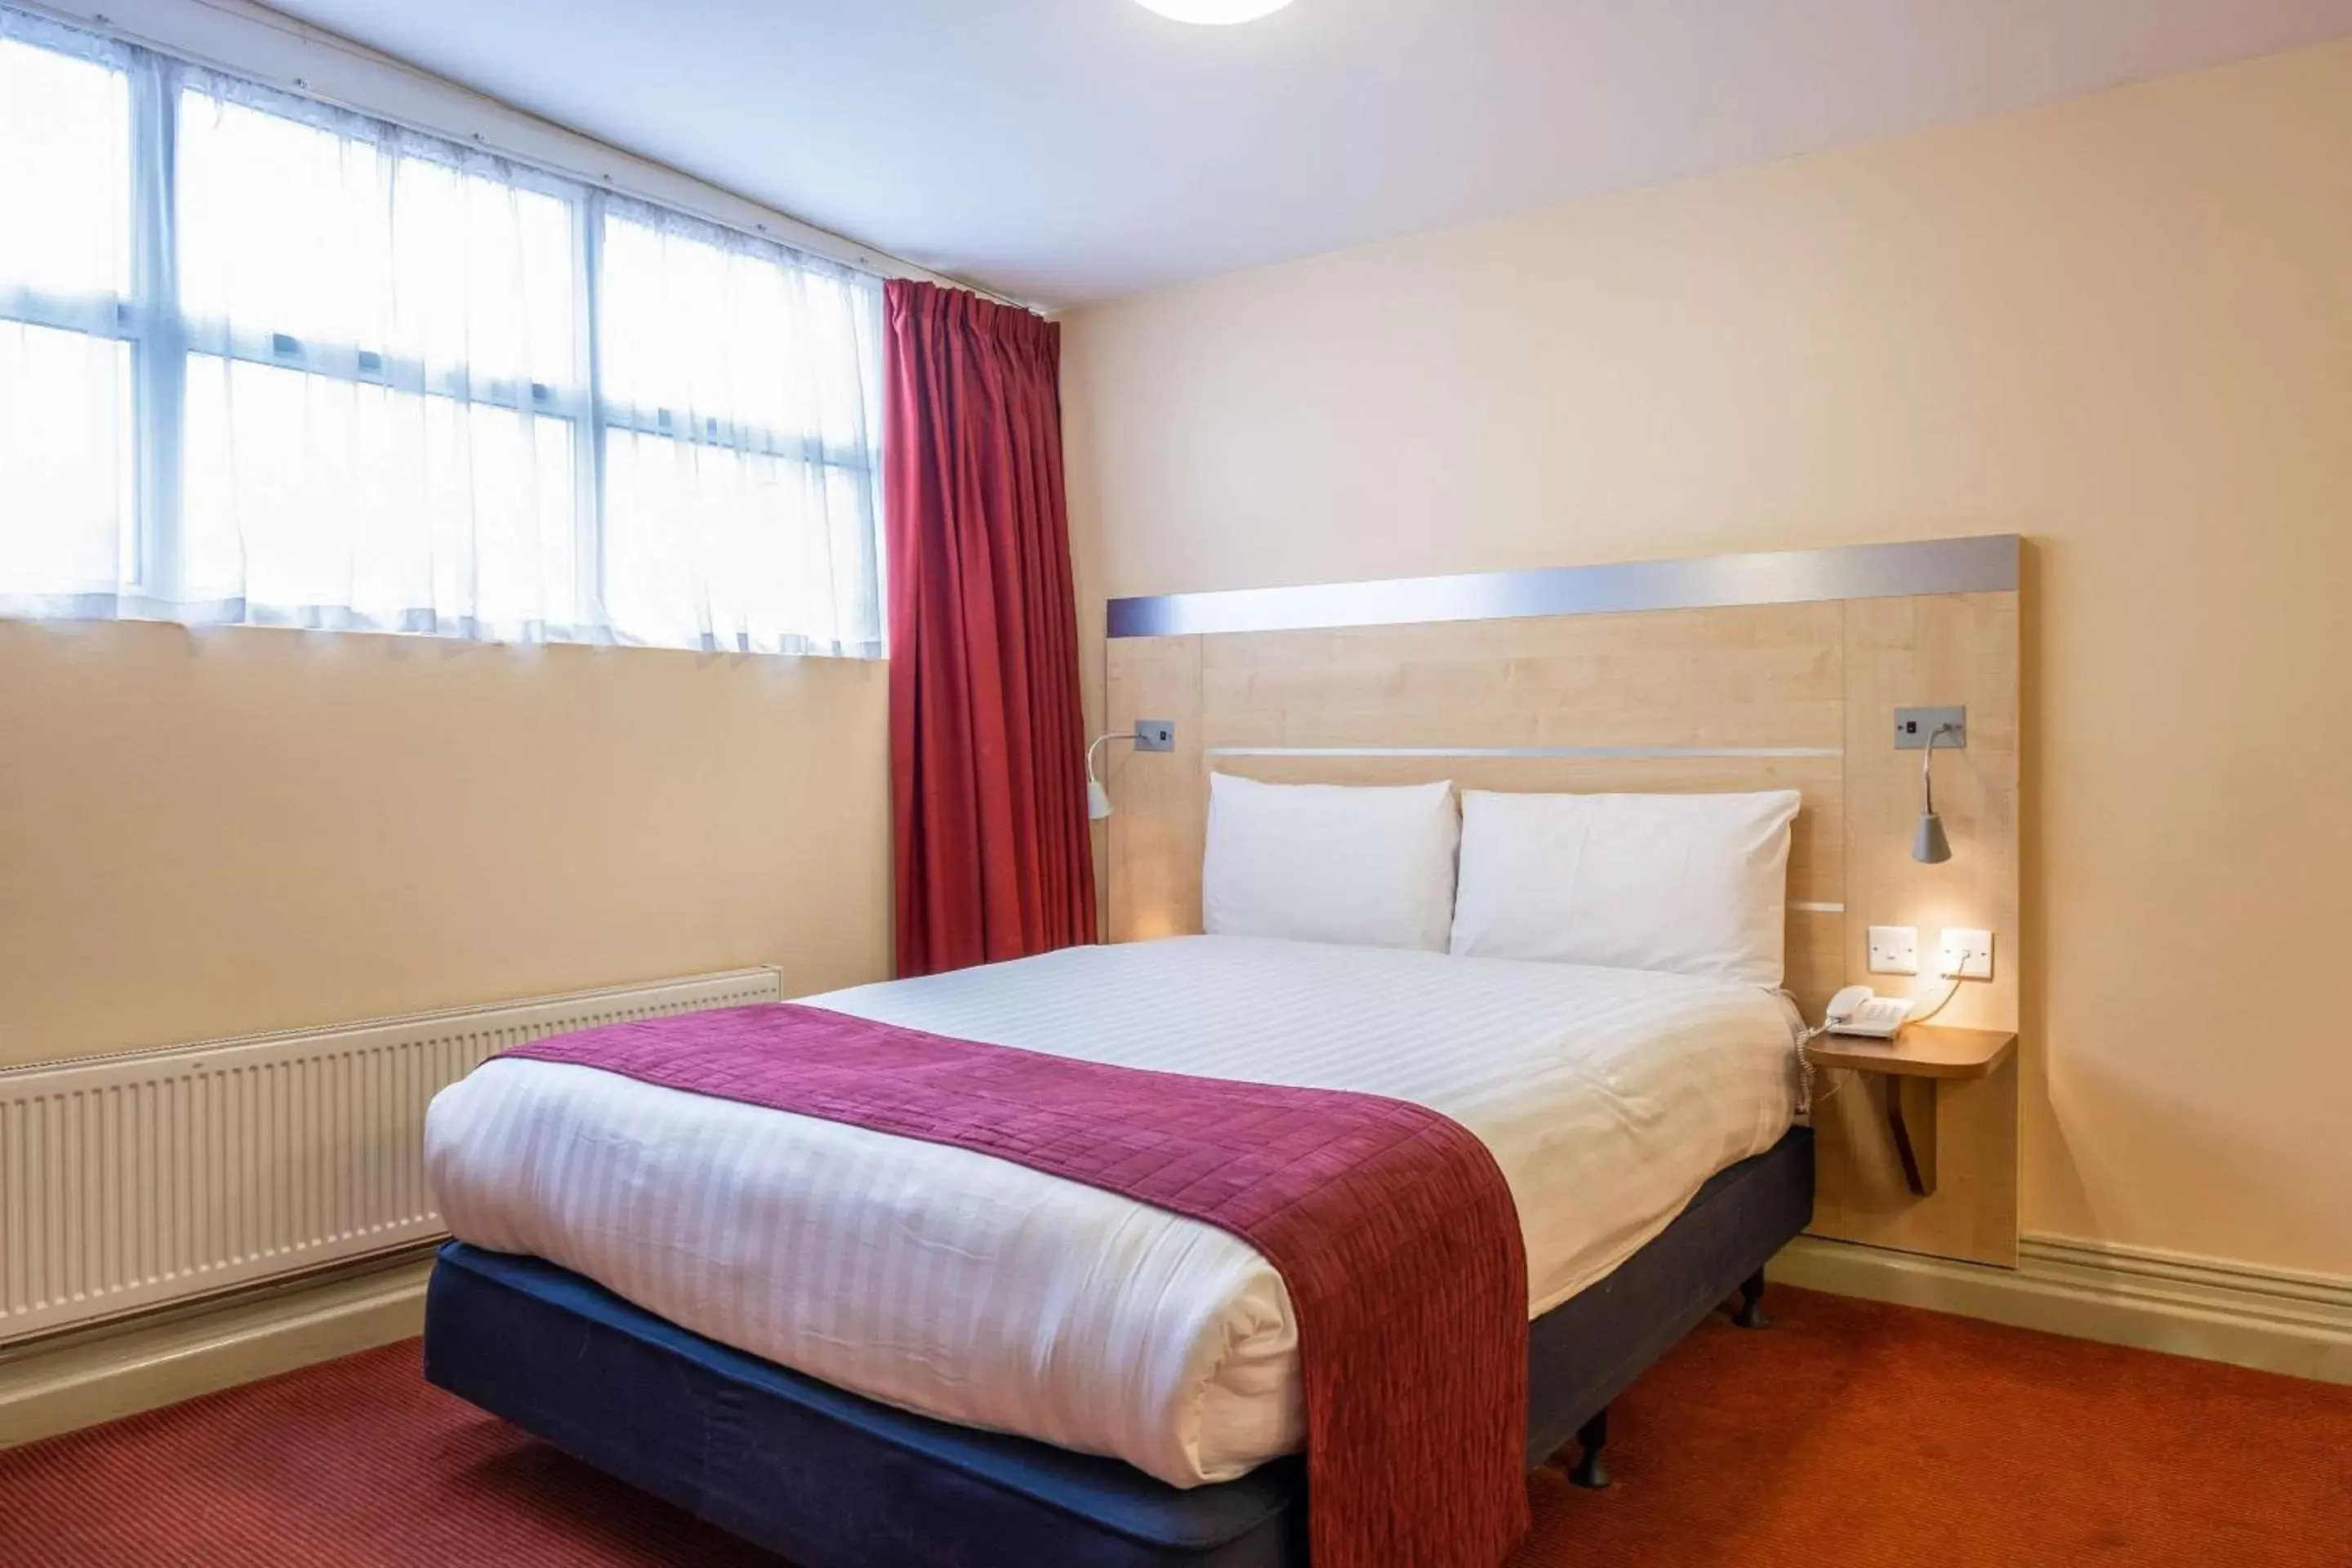 Bedroom, Bed in Comfort Inn Edgware Road W2